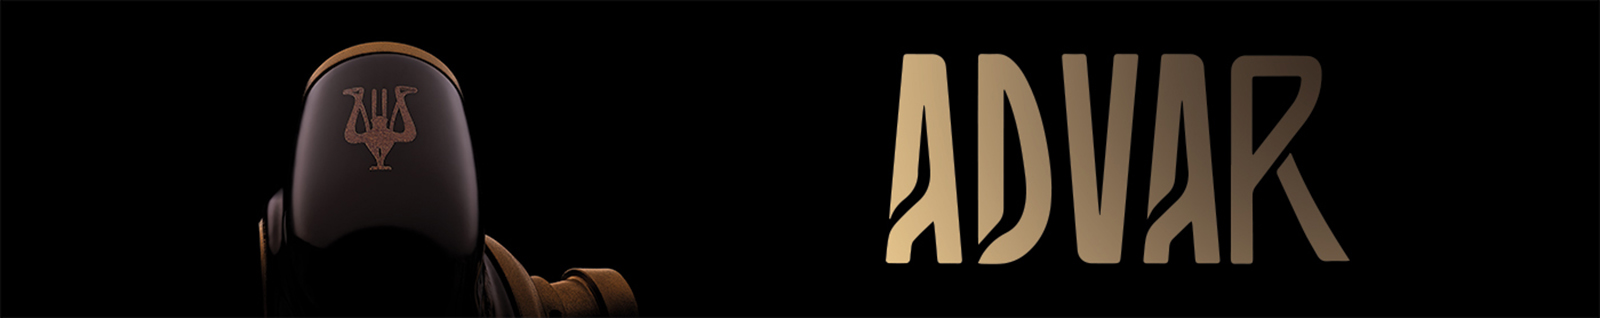 Meze ADVAR logo